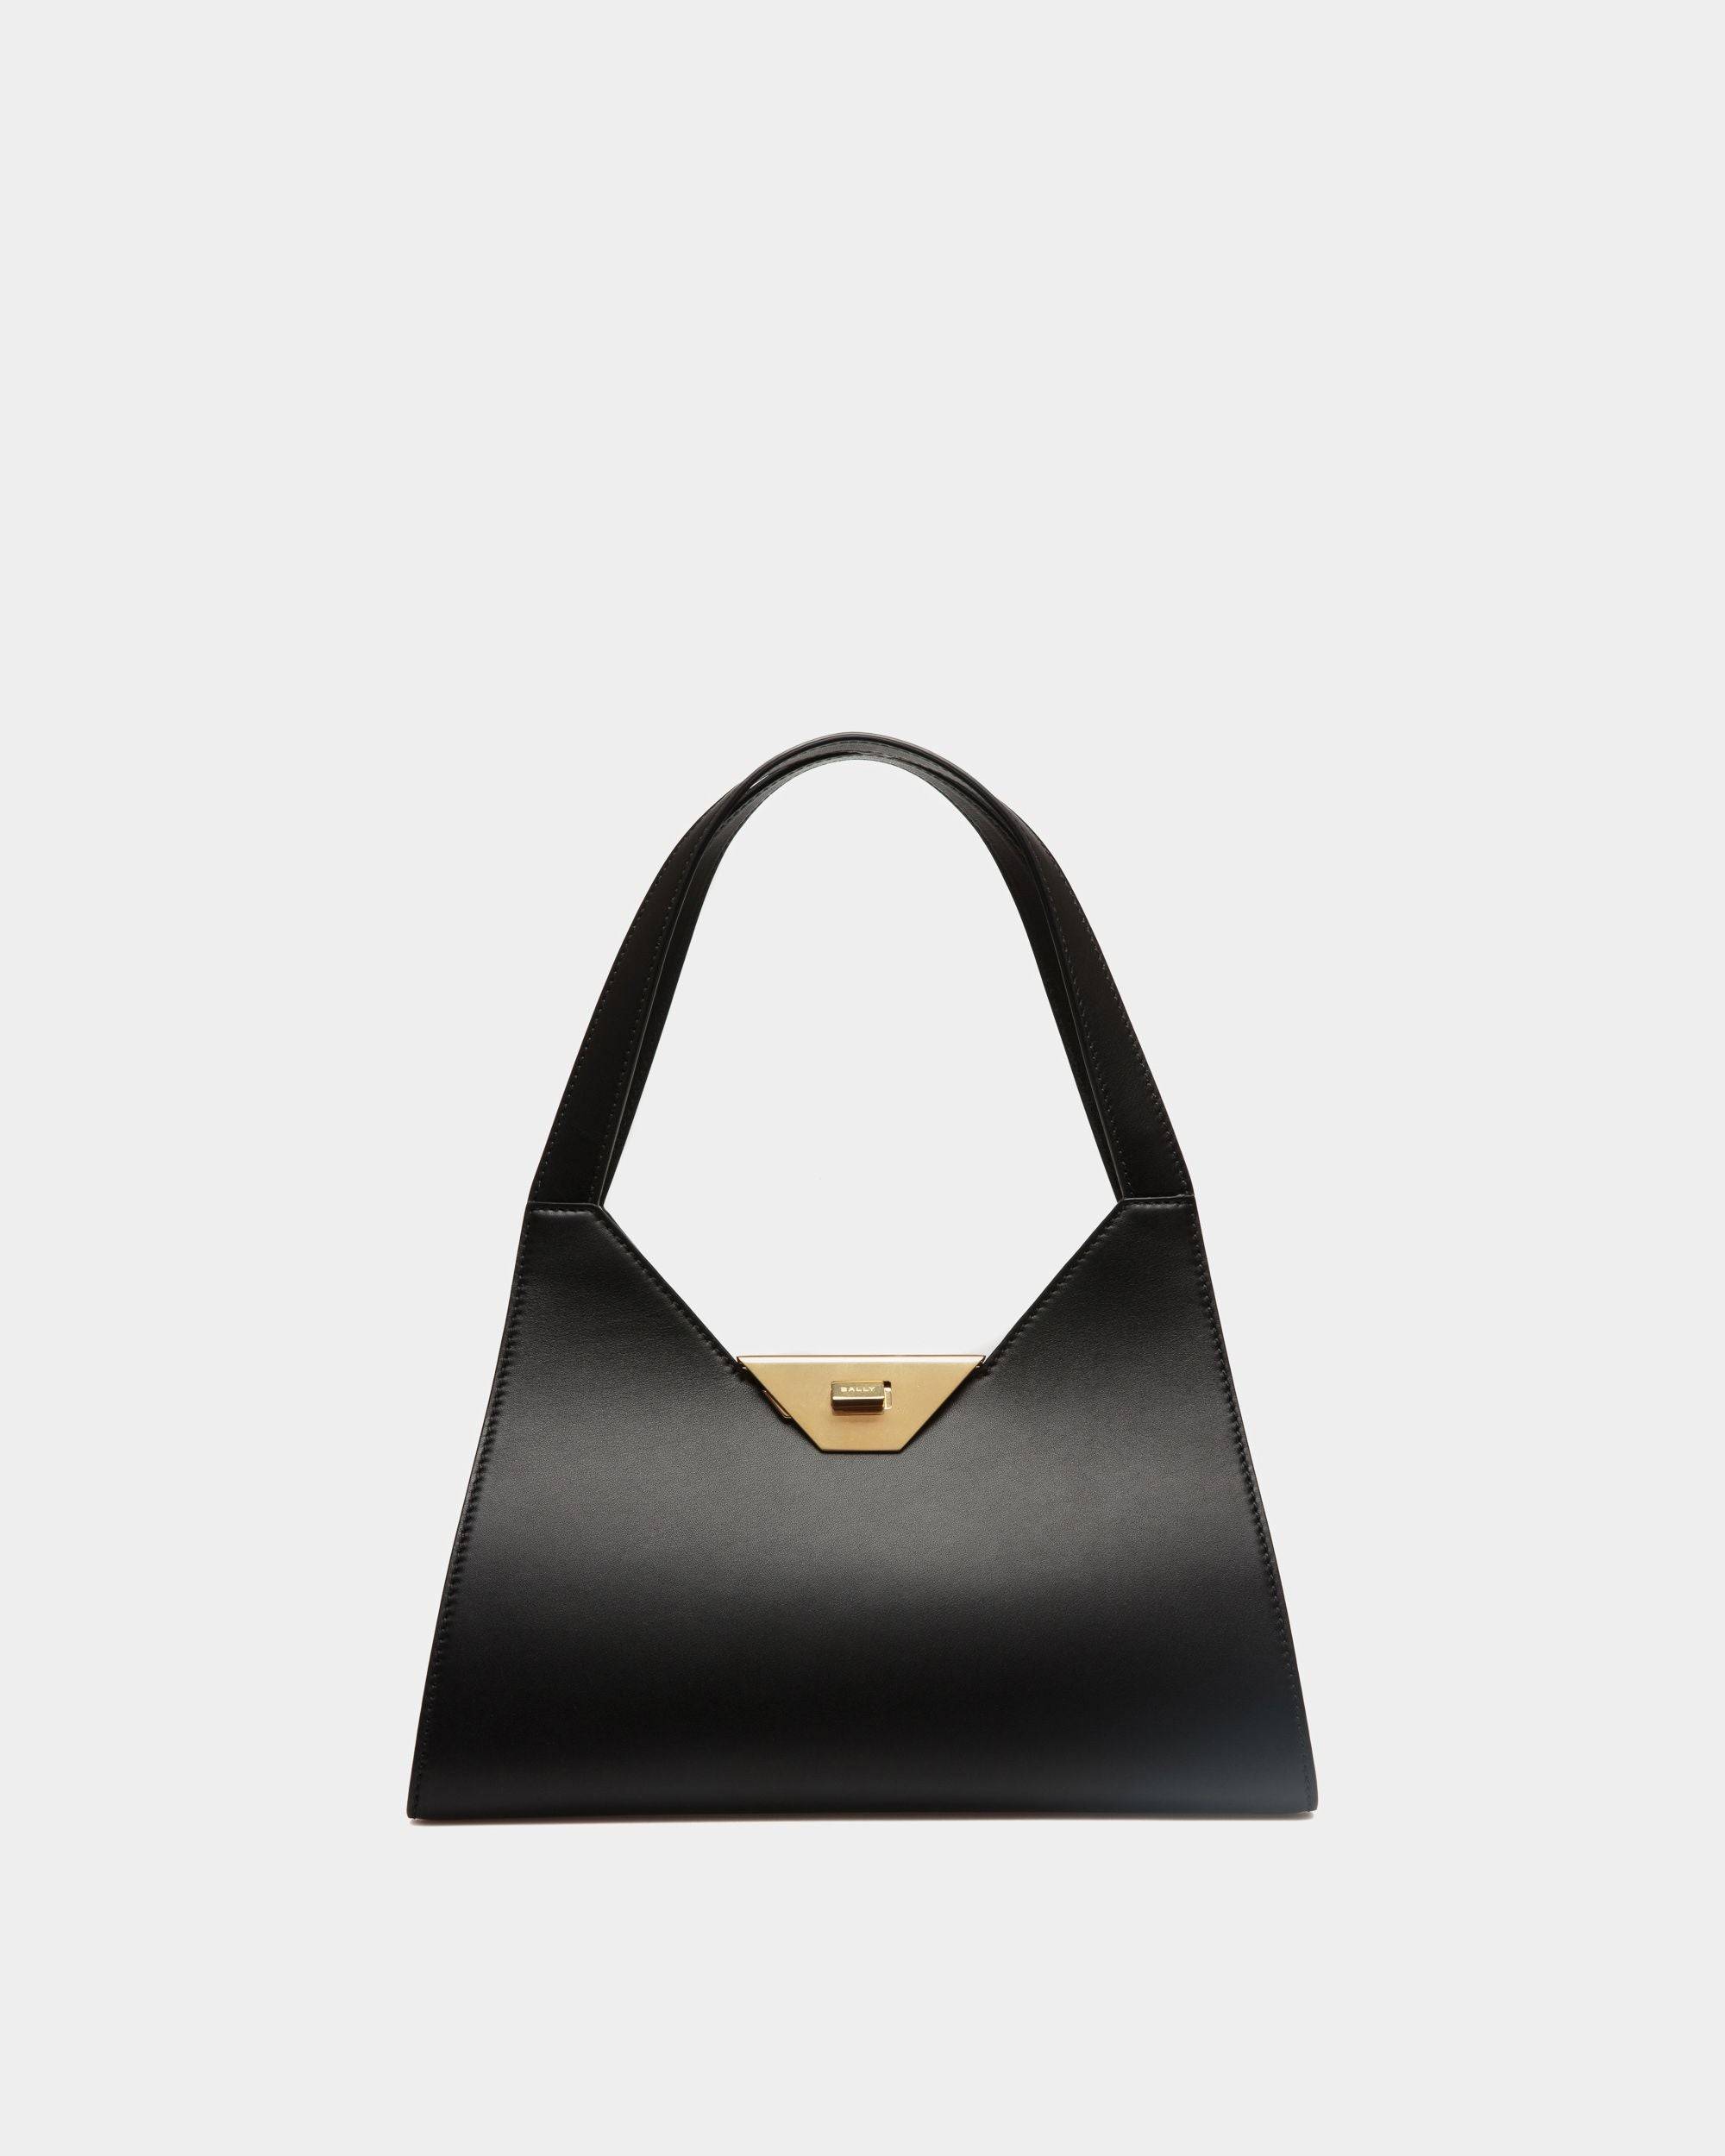 Tilt | Women's Shoulder Bag in Black Leather | Bally | Still Life Front